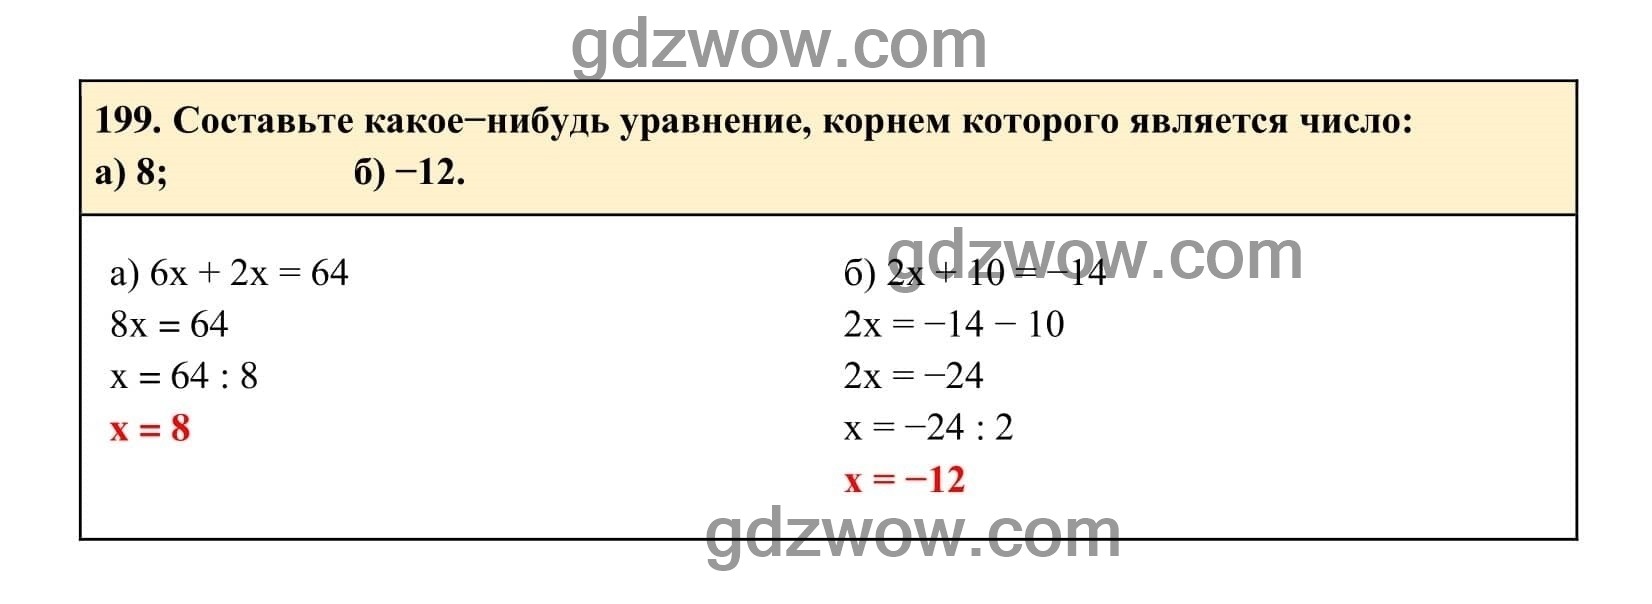 Упражнение 119 - ГДЗ по Алгебре 7 класс Учебник Макарычев (решебник) - GDZwow